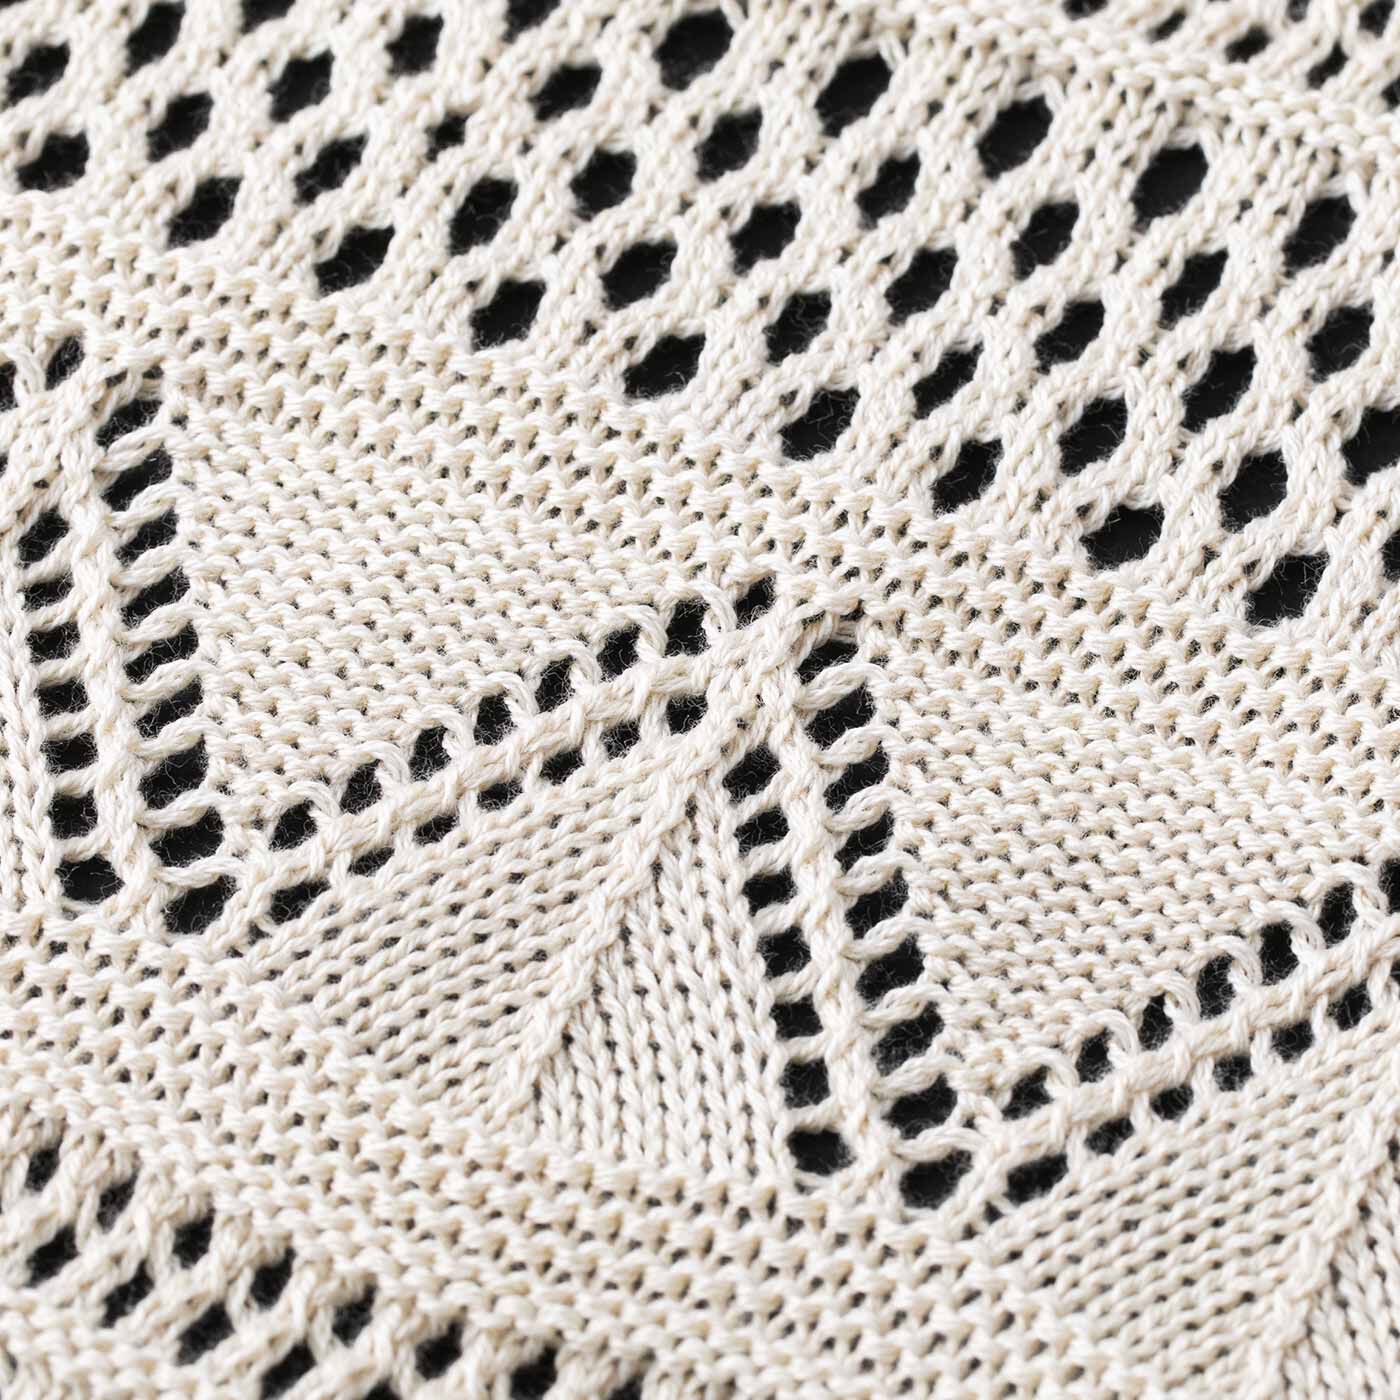 L'AMIPLUS|ラミプリュス　デイリー服に重ねるだけ 着映えと体形カバーがかなう 透かし編みニットベストの会|前身ごろは繊細な華やぎのある透かし編み模様。